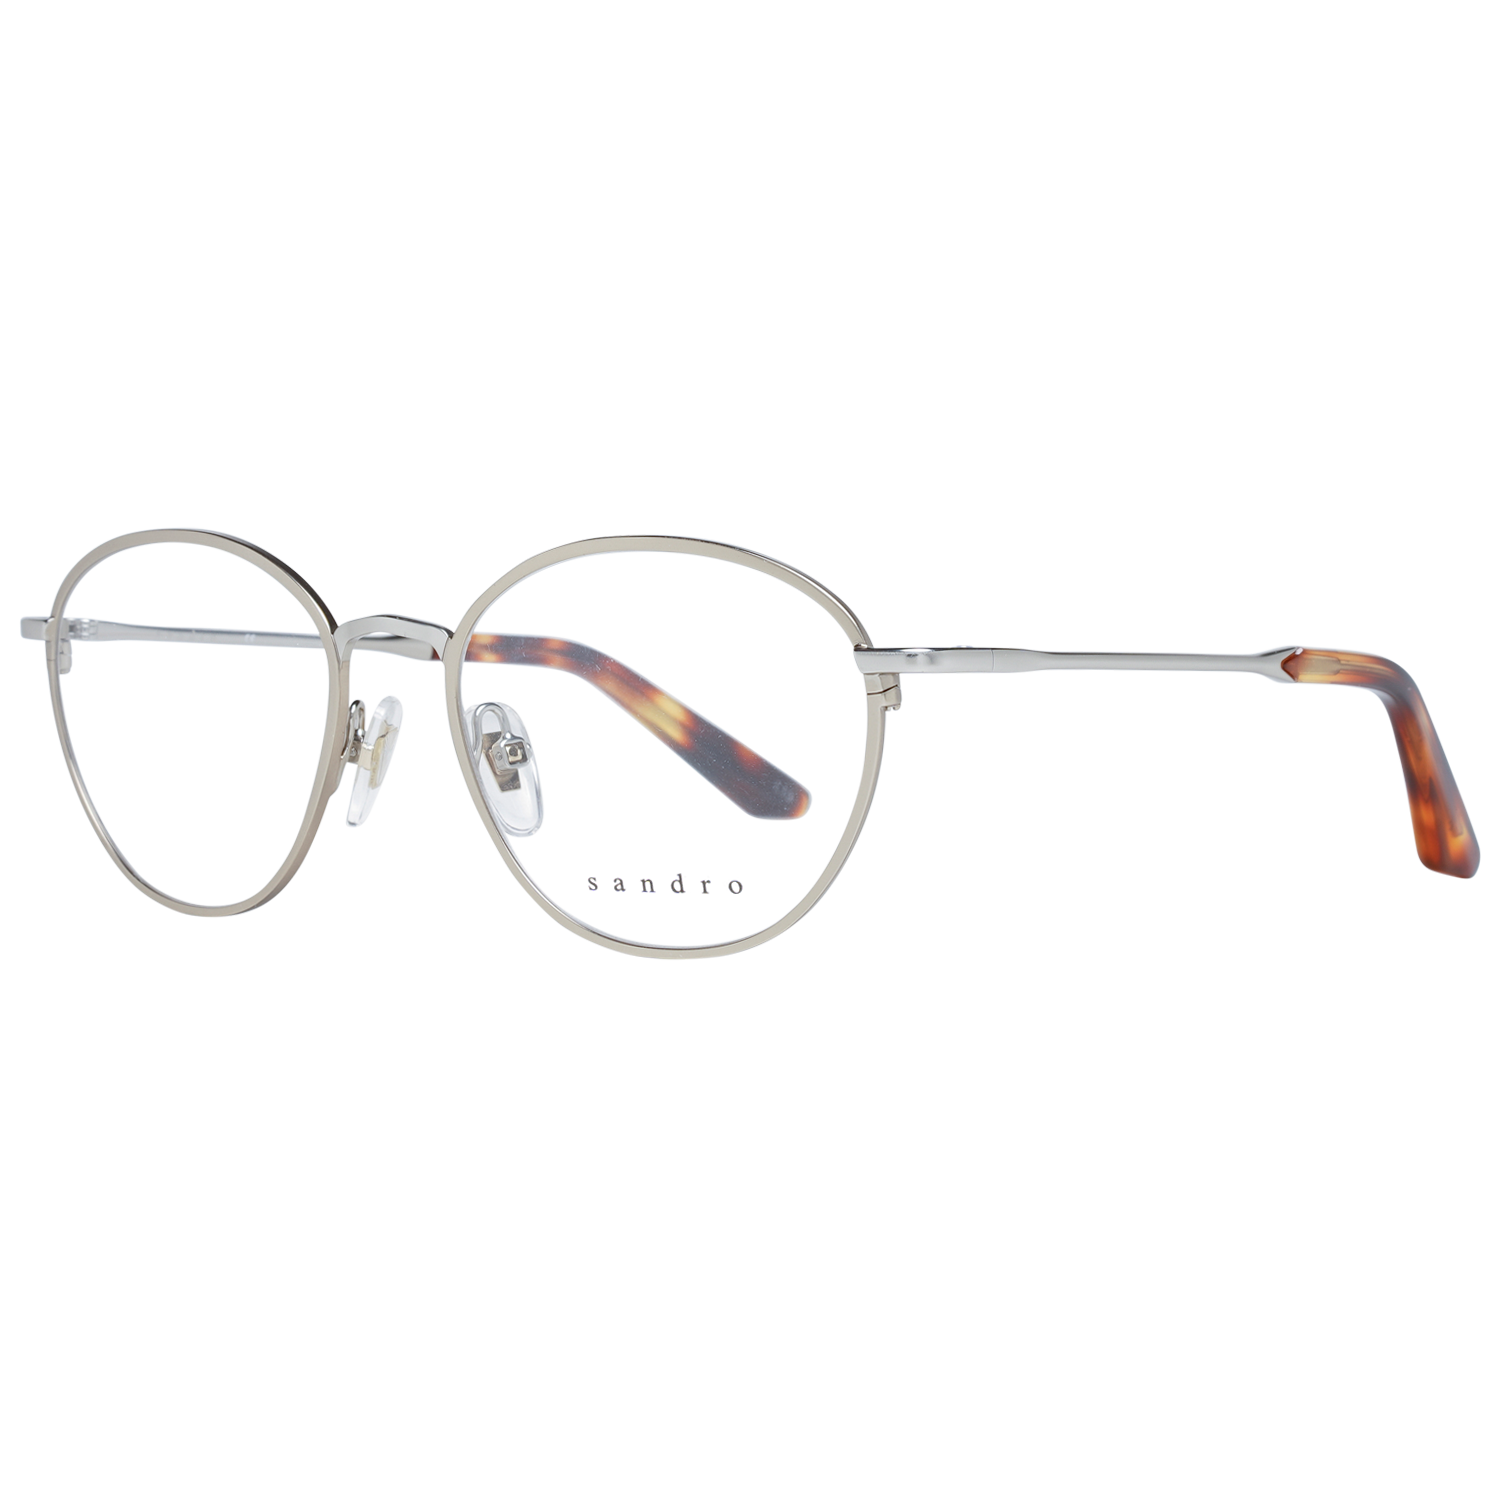 Sandro Frames Sandro Optical Frame SD4008 989 49 Eyeglasses Eyewear UK USA Australia 